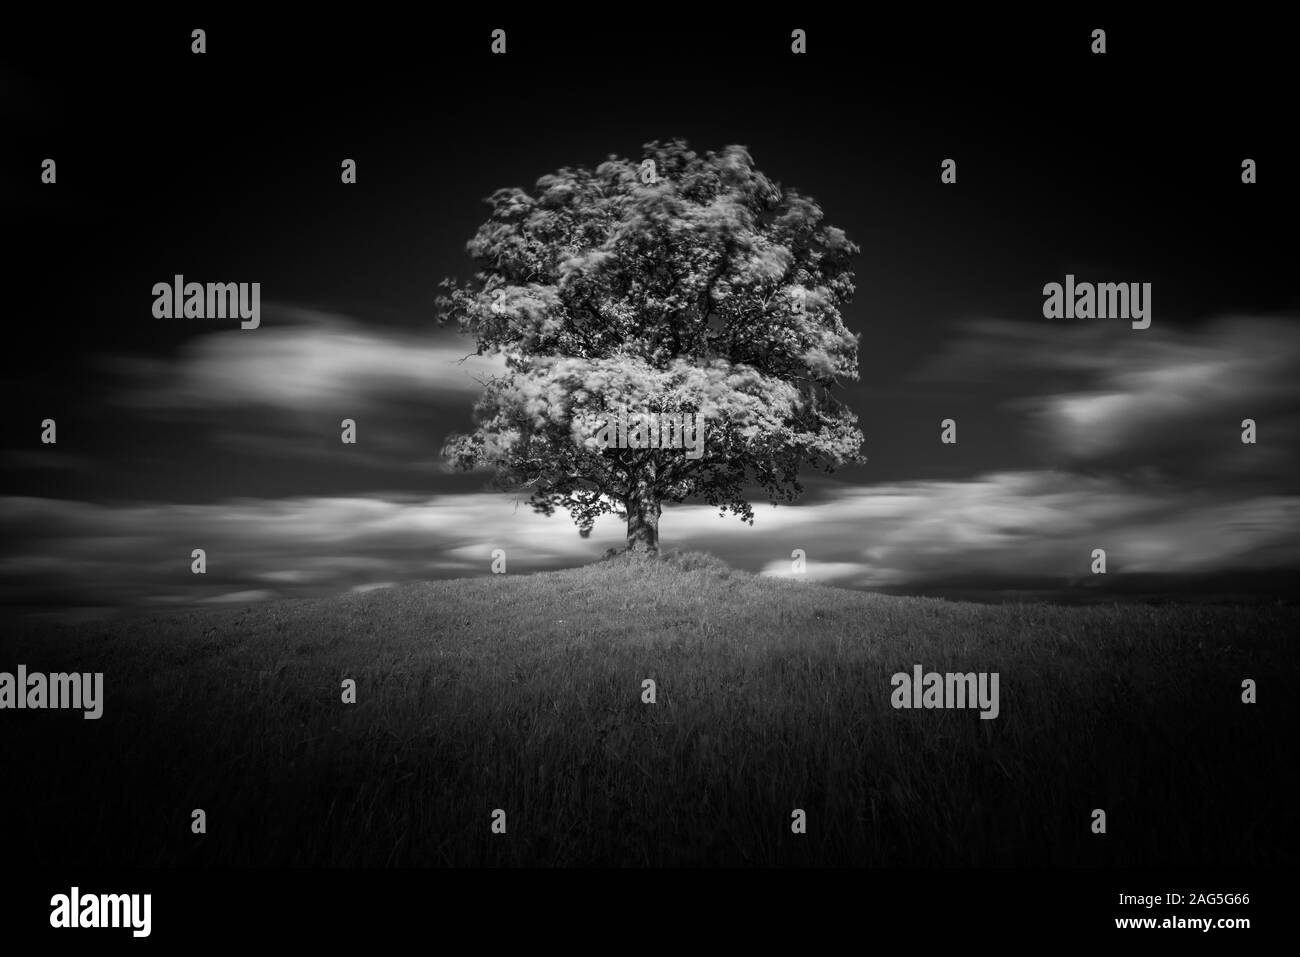 Cliché en échelle de gris d'un arbre sur une colline couverte avec de l'herbe avec des nuages dans le ciel en arrière-plan Banque D'Images